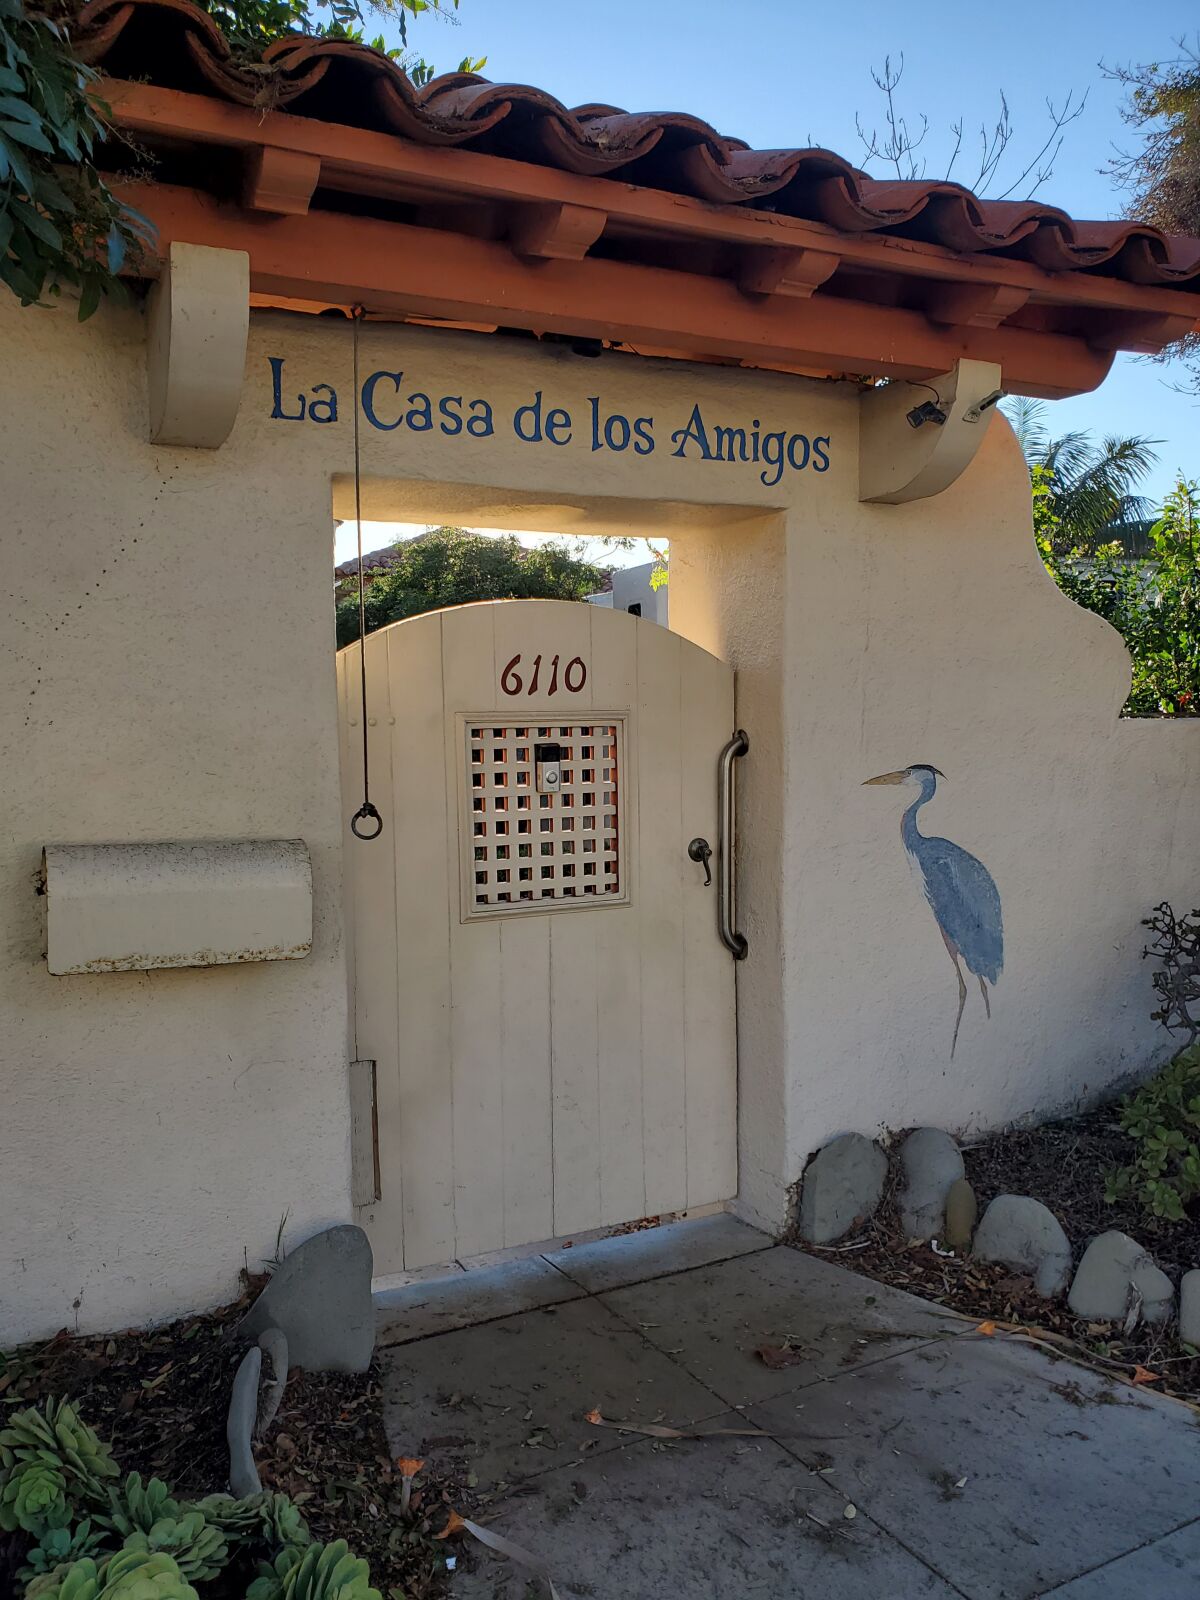 Little of La Casa de los Amigos at 6110 Camino de la Costa in La Jolla's Lower Hermosa area is visible from the street.